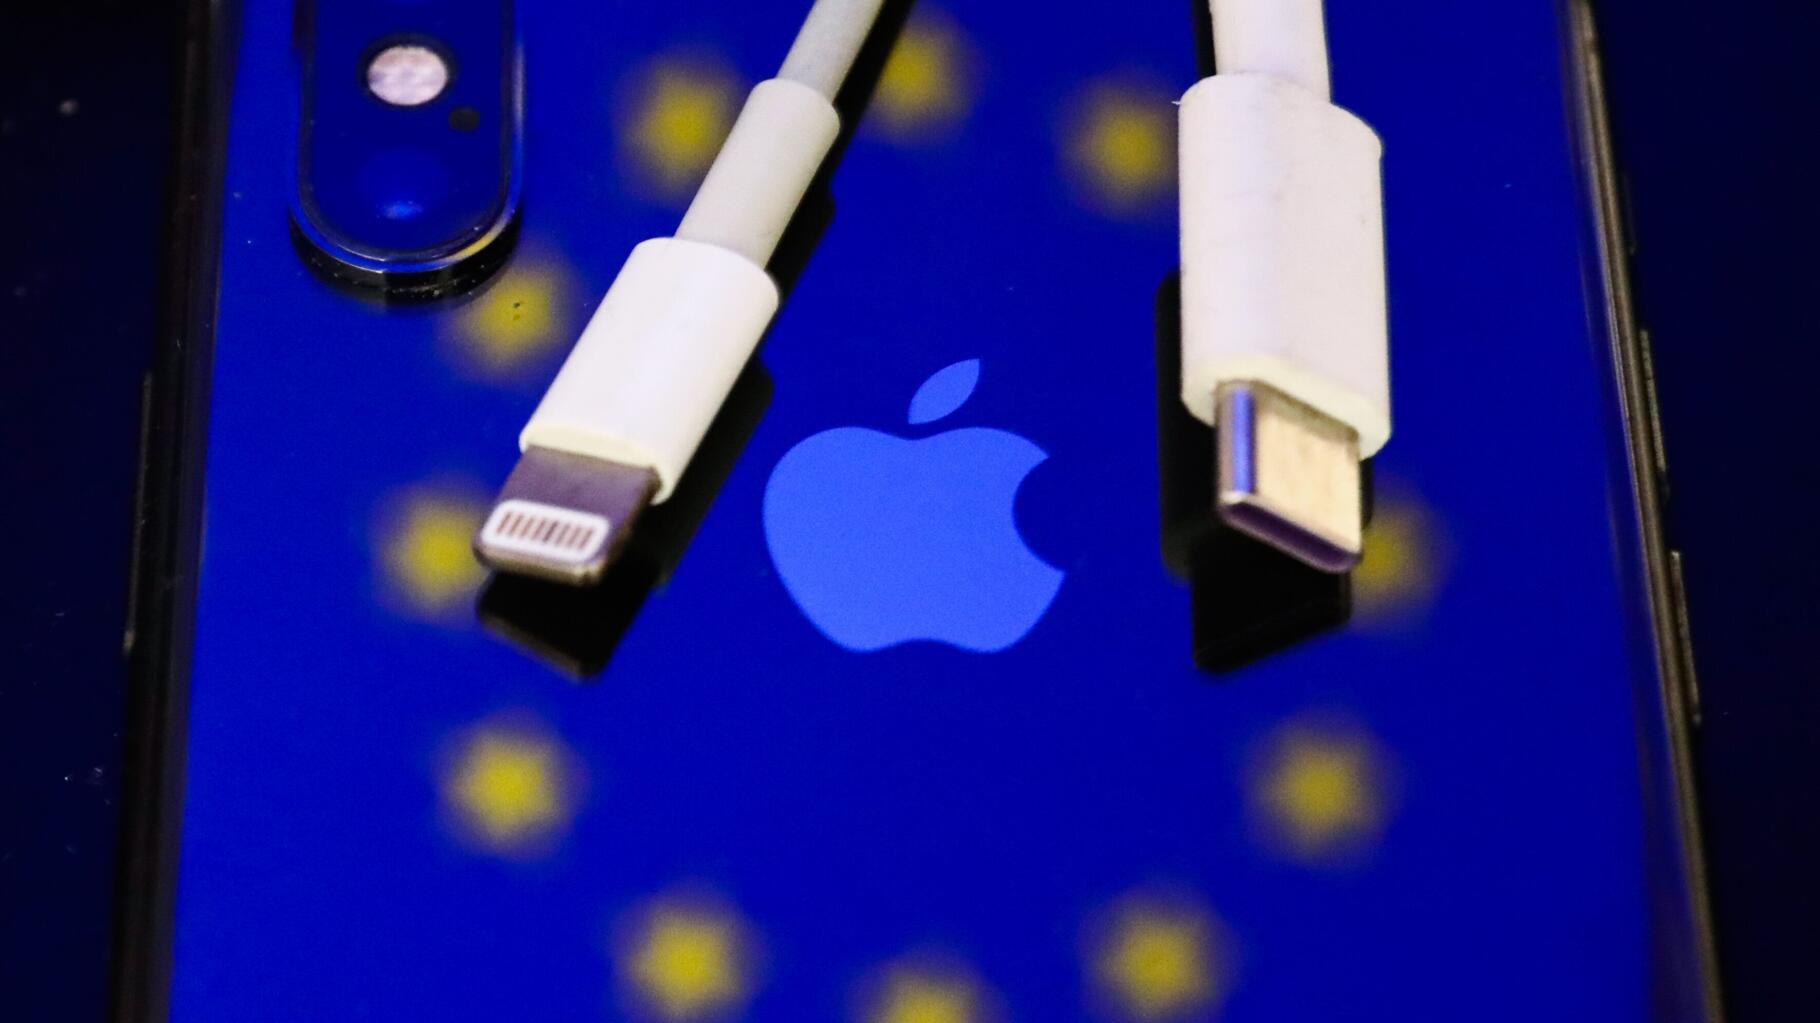 Les iPhone ne seront bientôt plus livrés avec des écouteurs en France